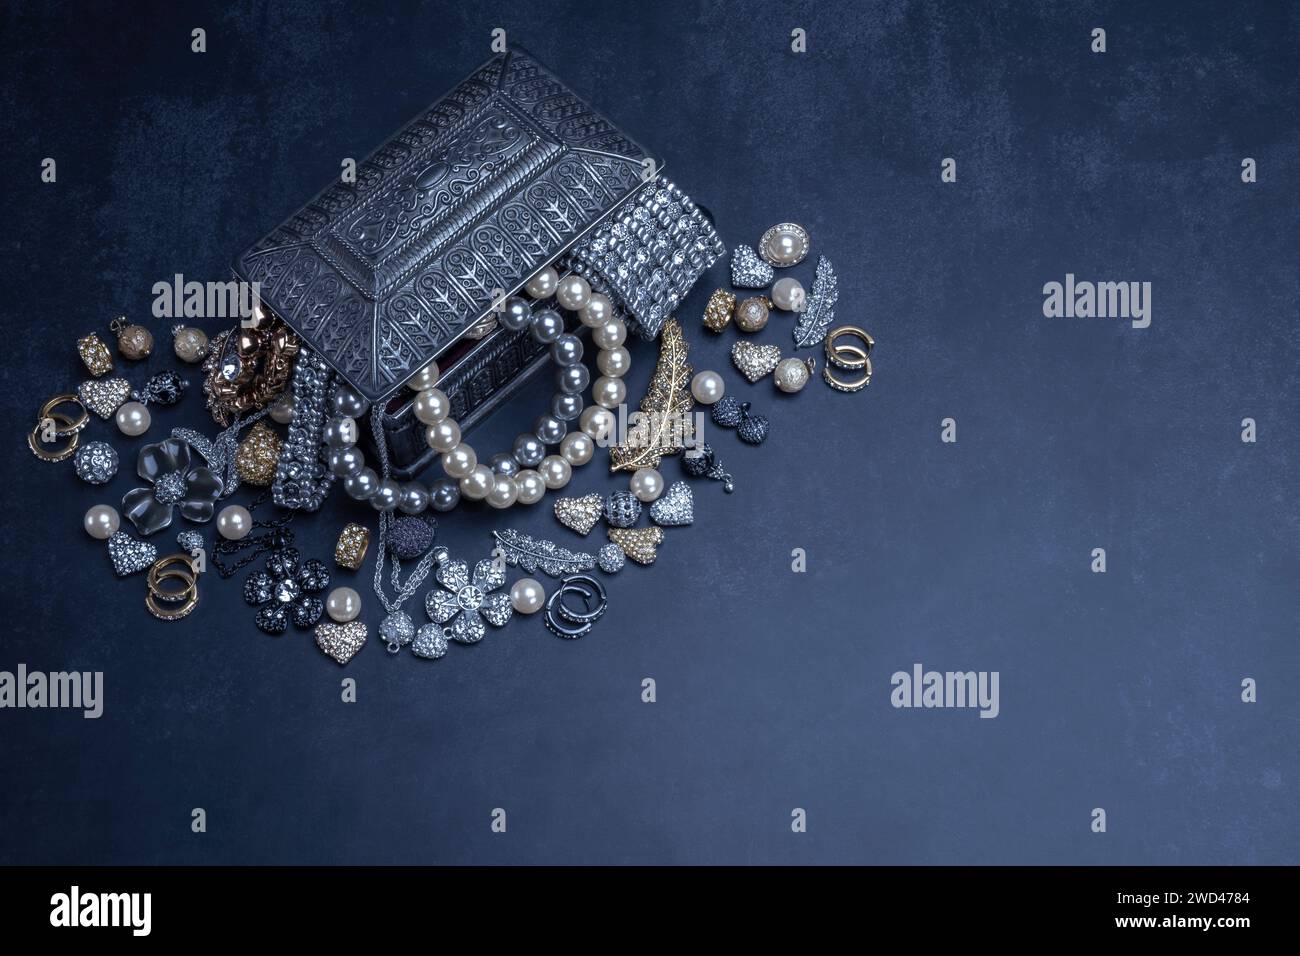 Verschiedene Schmuckstücke Perlen Gold und Silber in einer silbernen Box auf schwarzem Hintergrund. Armbänder, Ohrringe, Ketten, Mode, Accessoires, Schmuckkonzept. Stockfoto